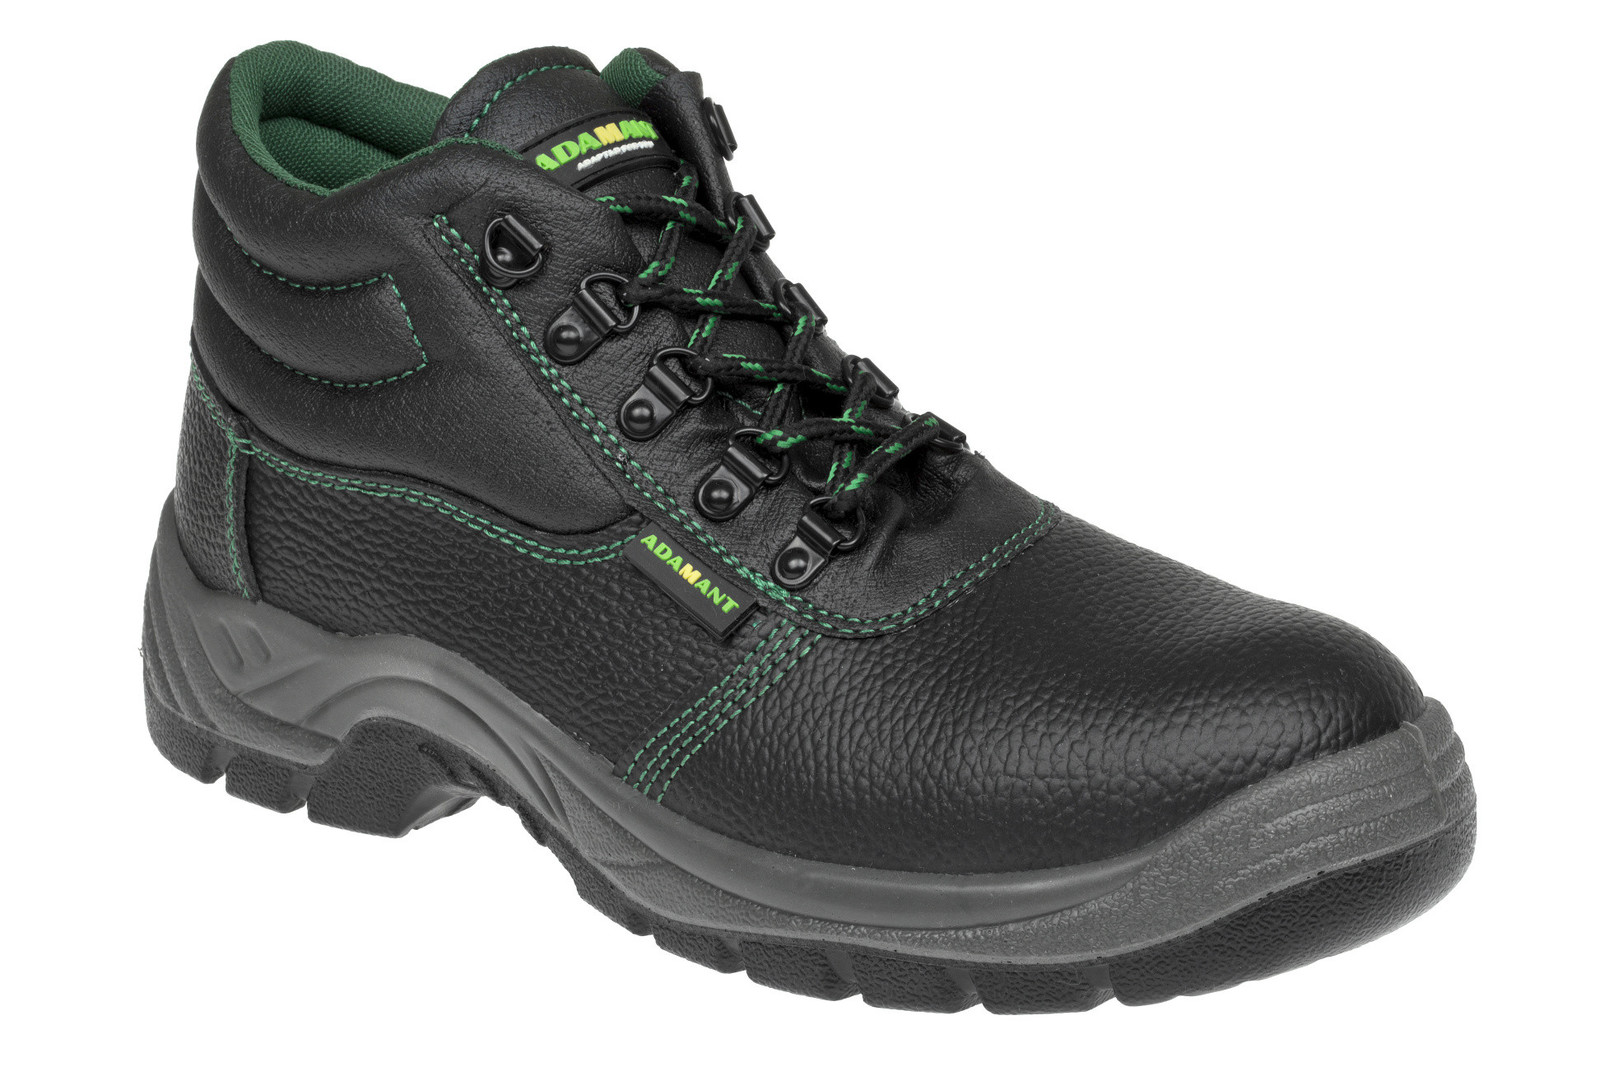 Bezpečnostná obuv Adamant Classic S1P - veľkosť: 45, farba: čierna